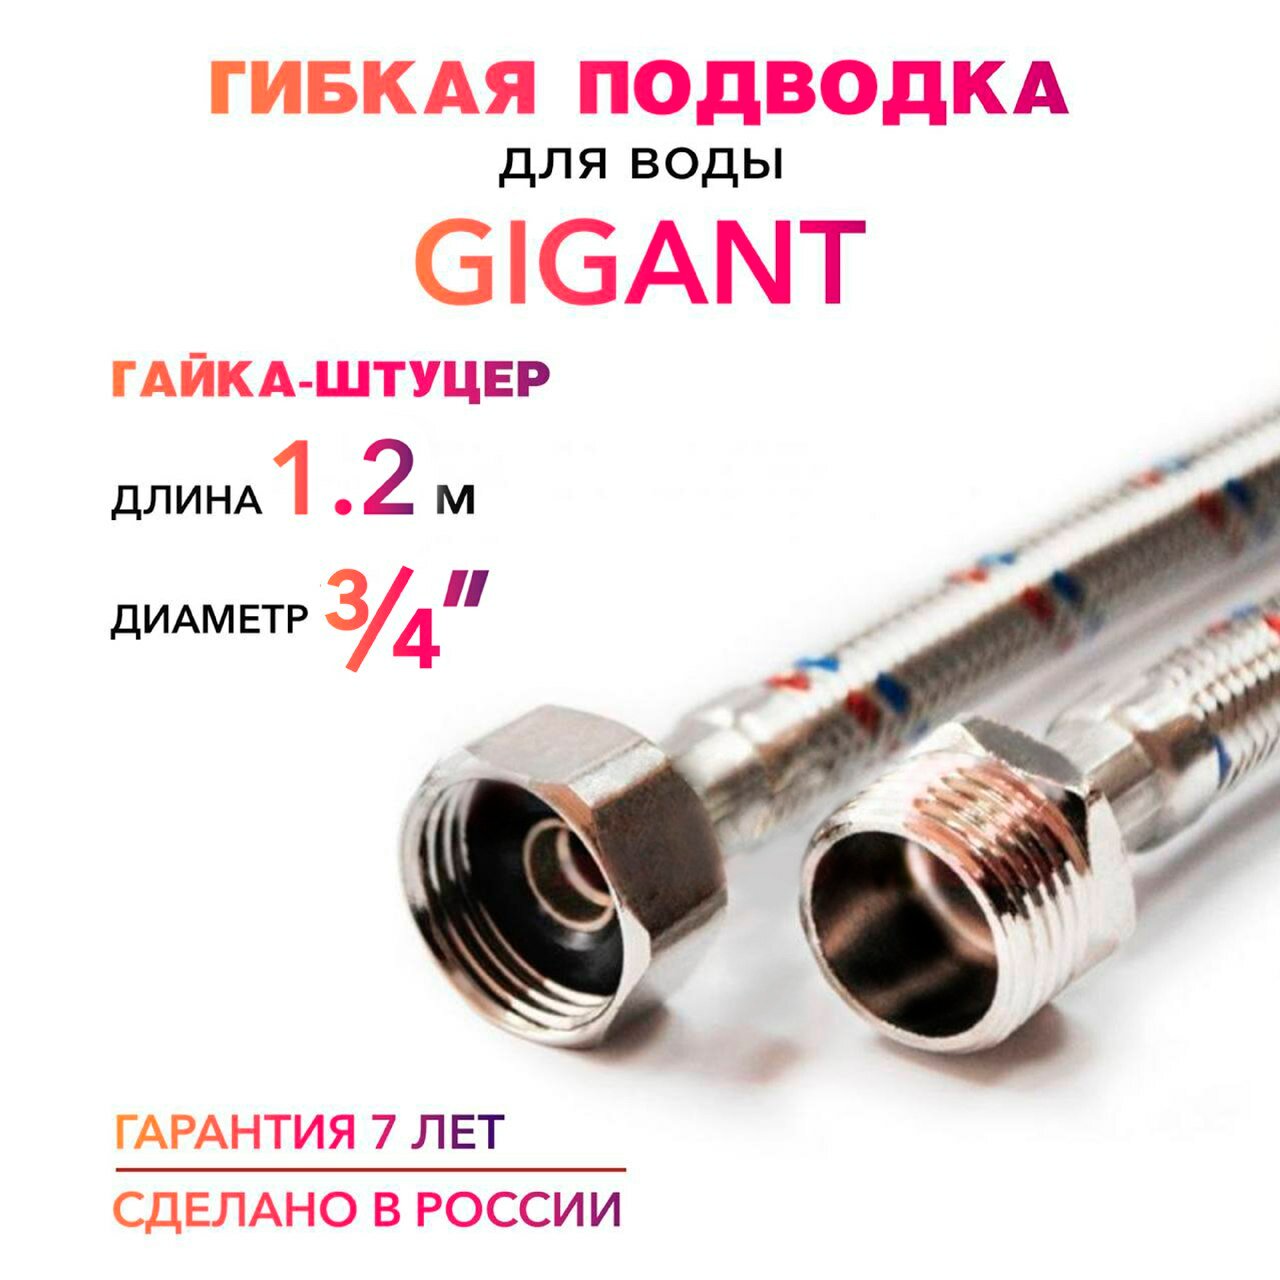 Гибкая подводка для воды ГИГАНТ 3/4" гайка-штуцер MK Plast